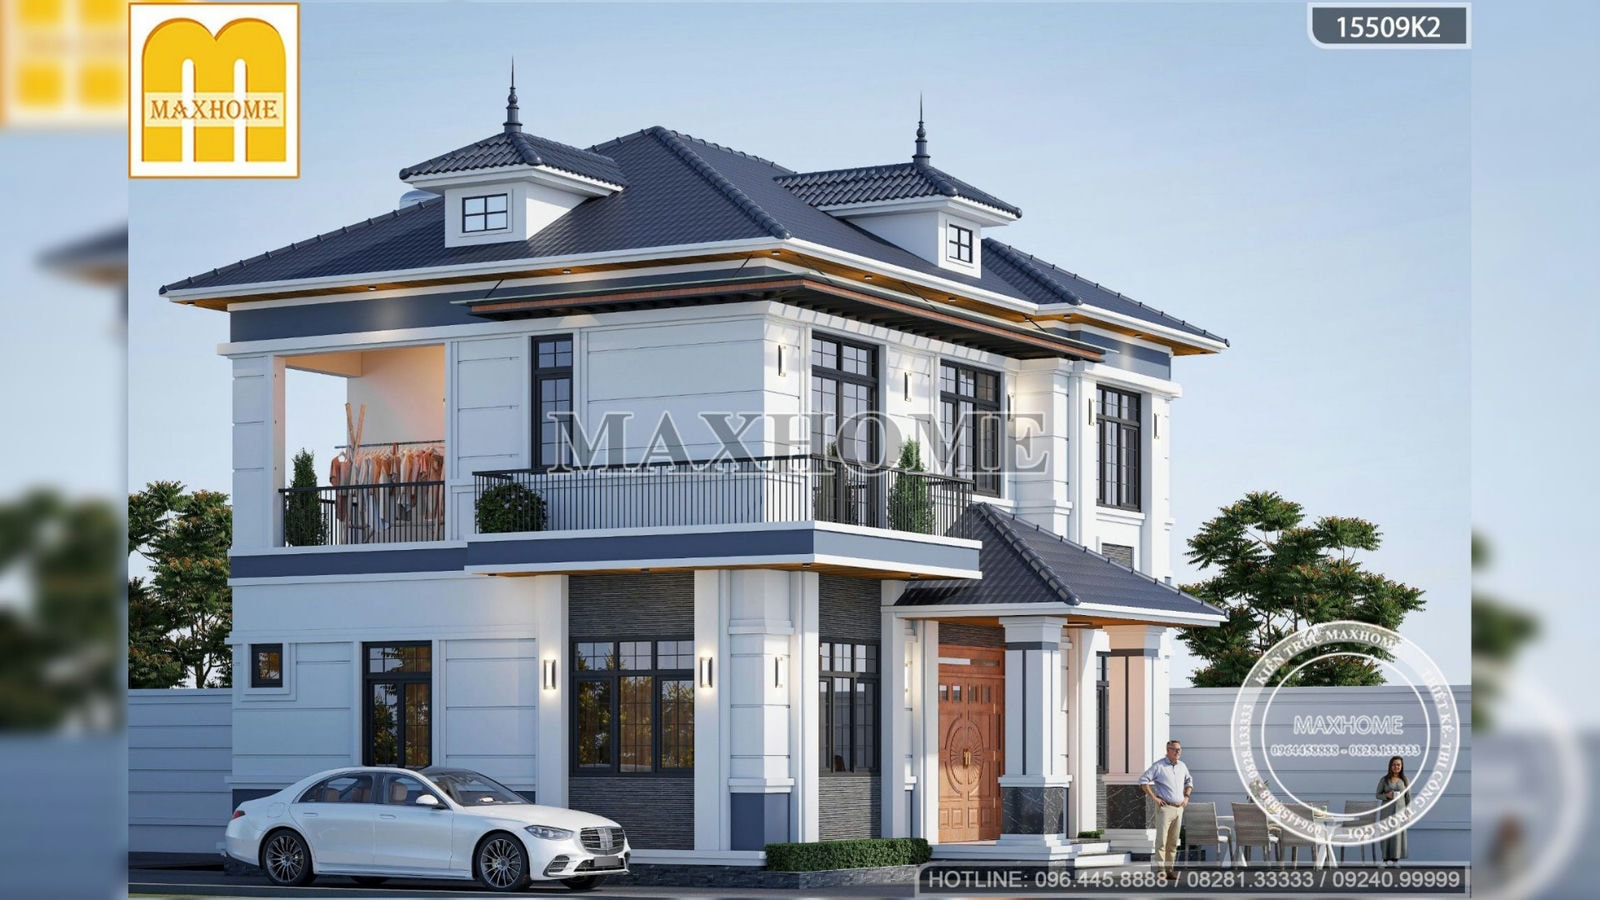 Siêu phẩm biệt thự 2 tầng mái Nhật với thiết kế ấn tượng tại Thái Bình | MH02400